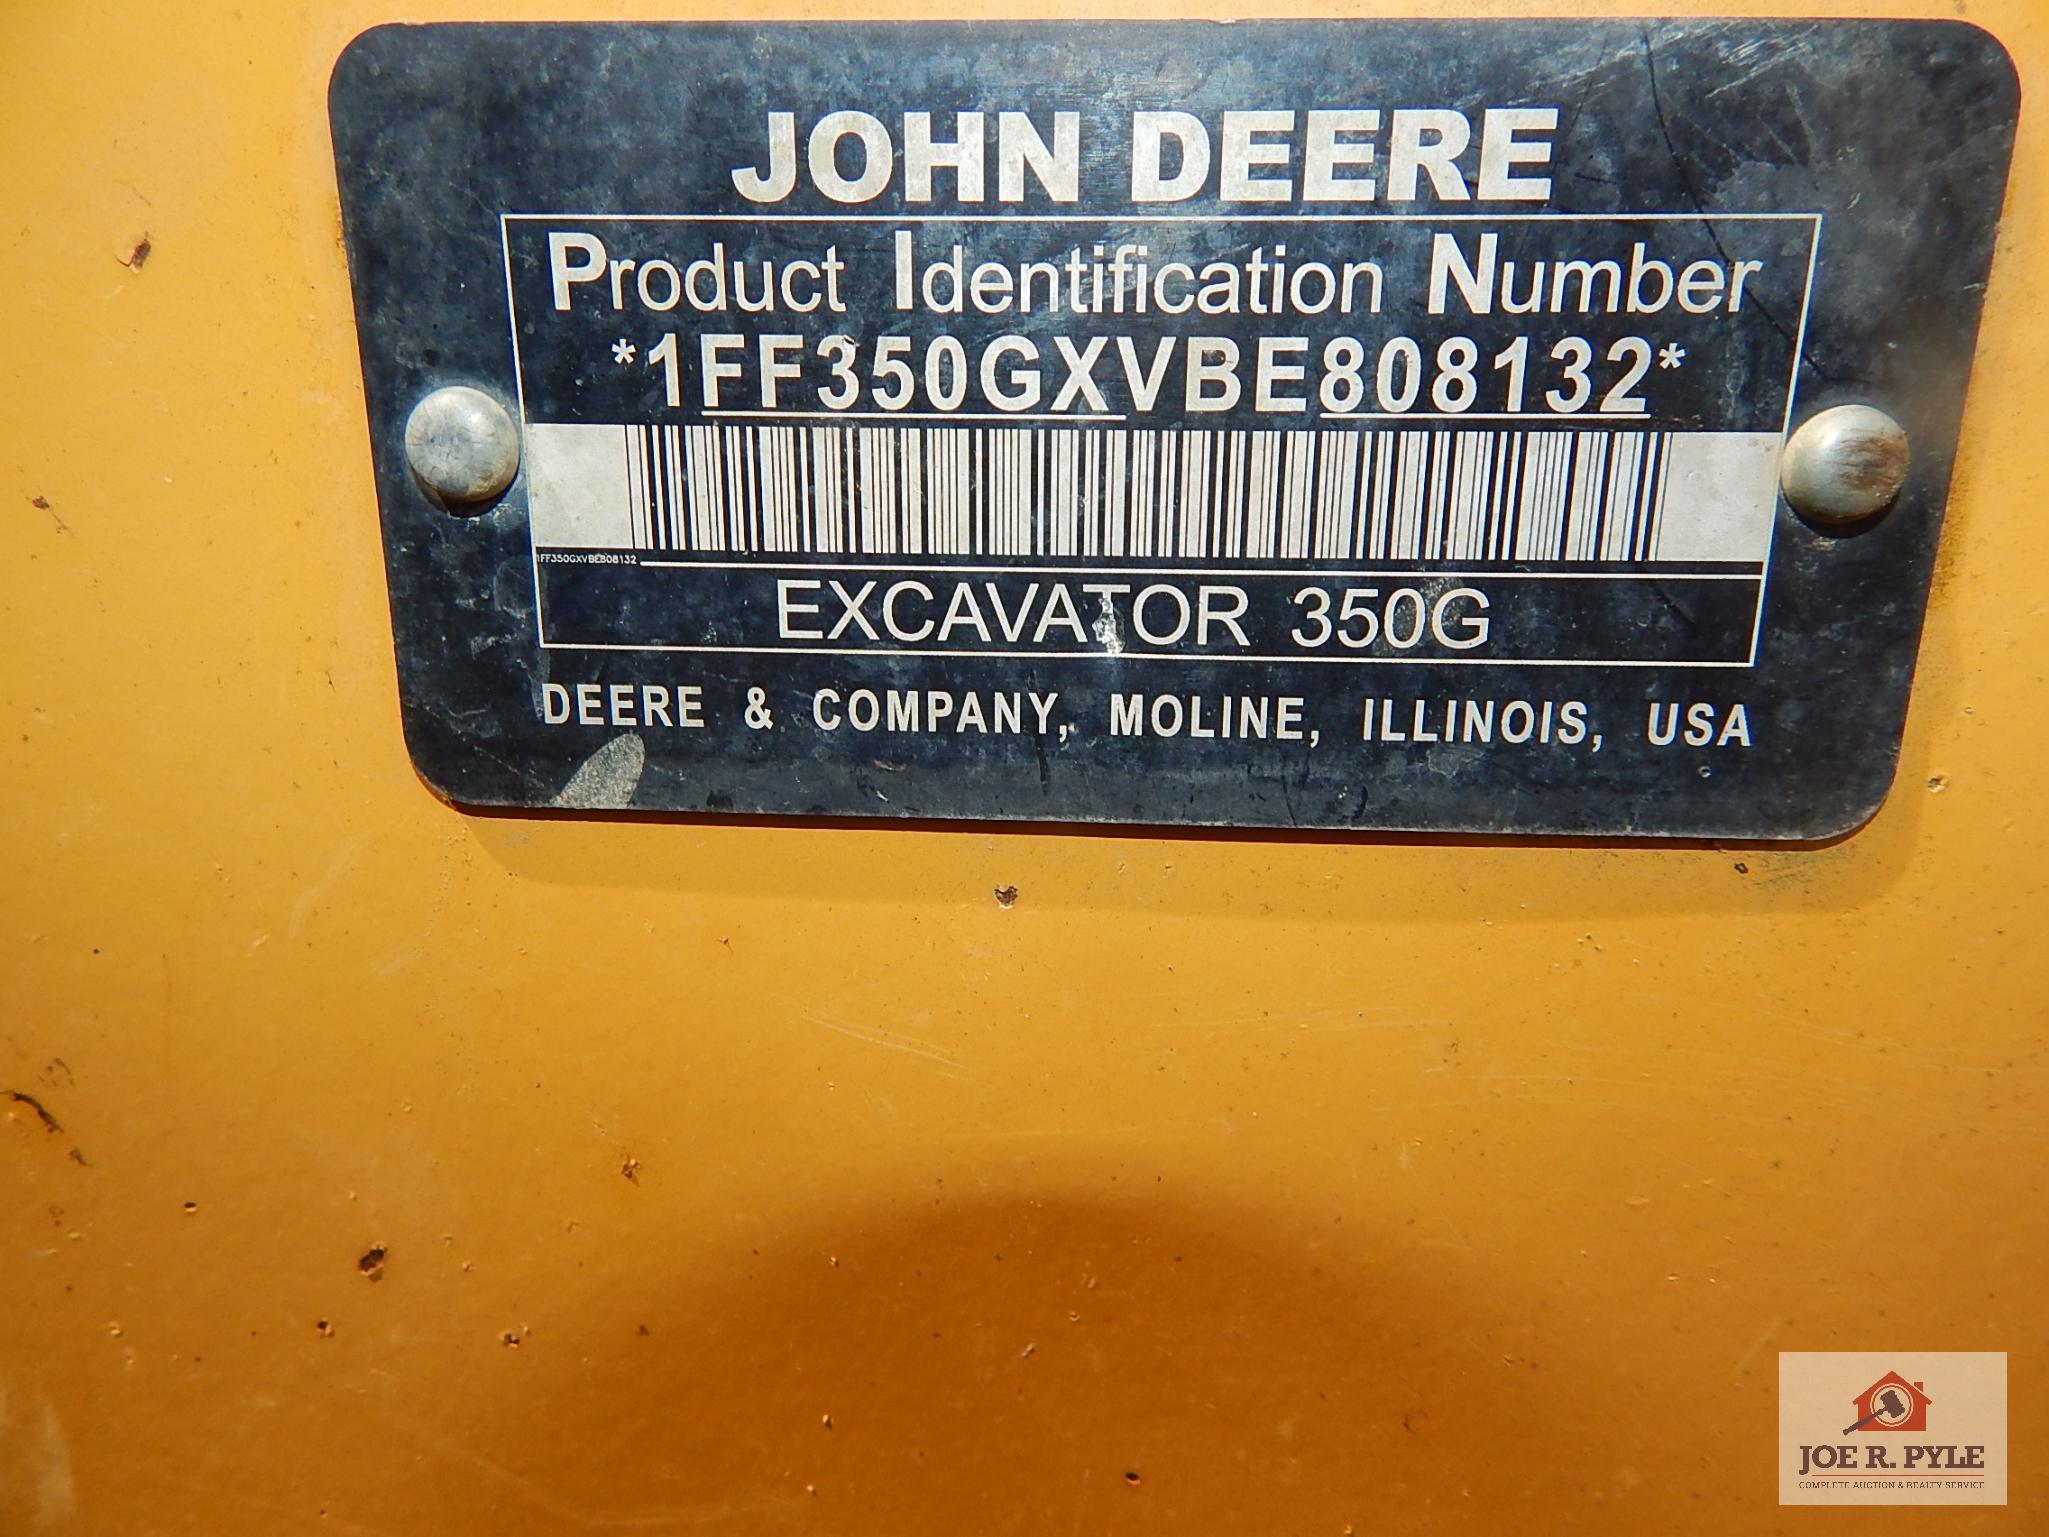 John Deere Excavator 350G 4614 hours. VIN 1FF350GXVBE808132